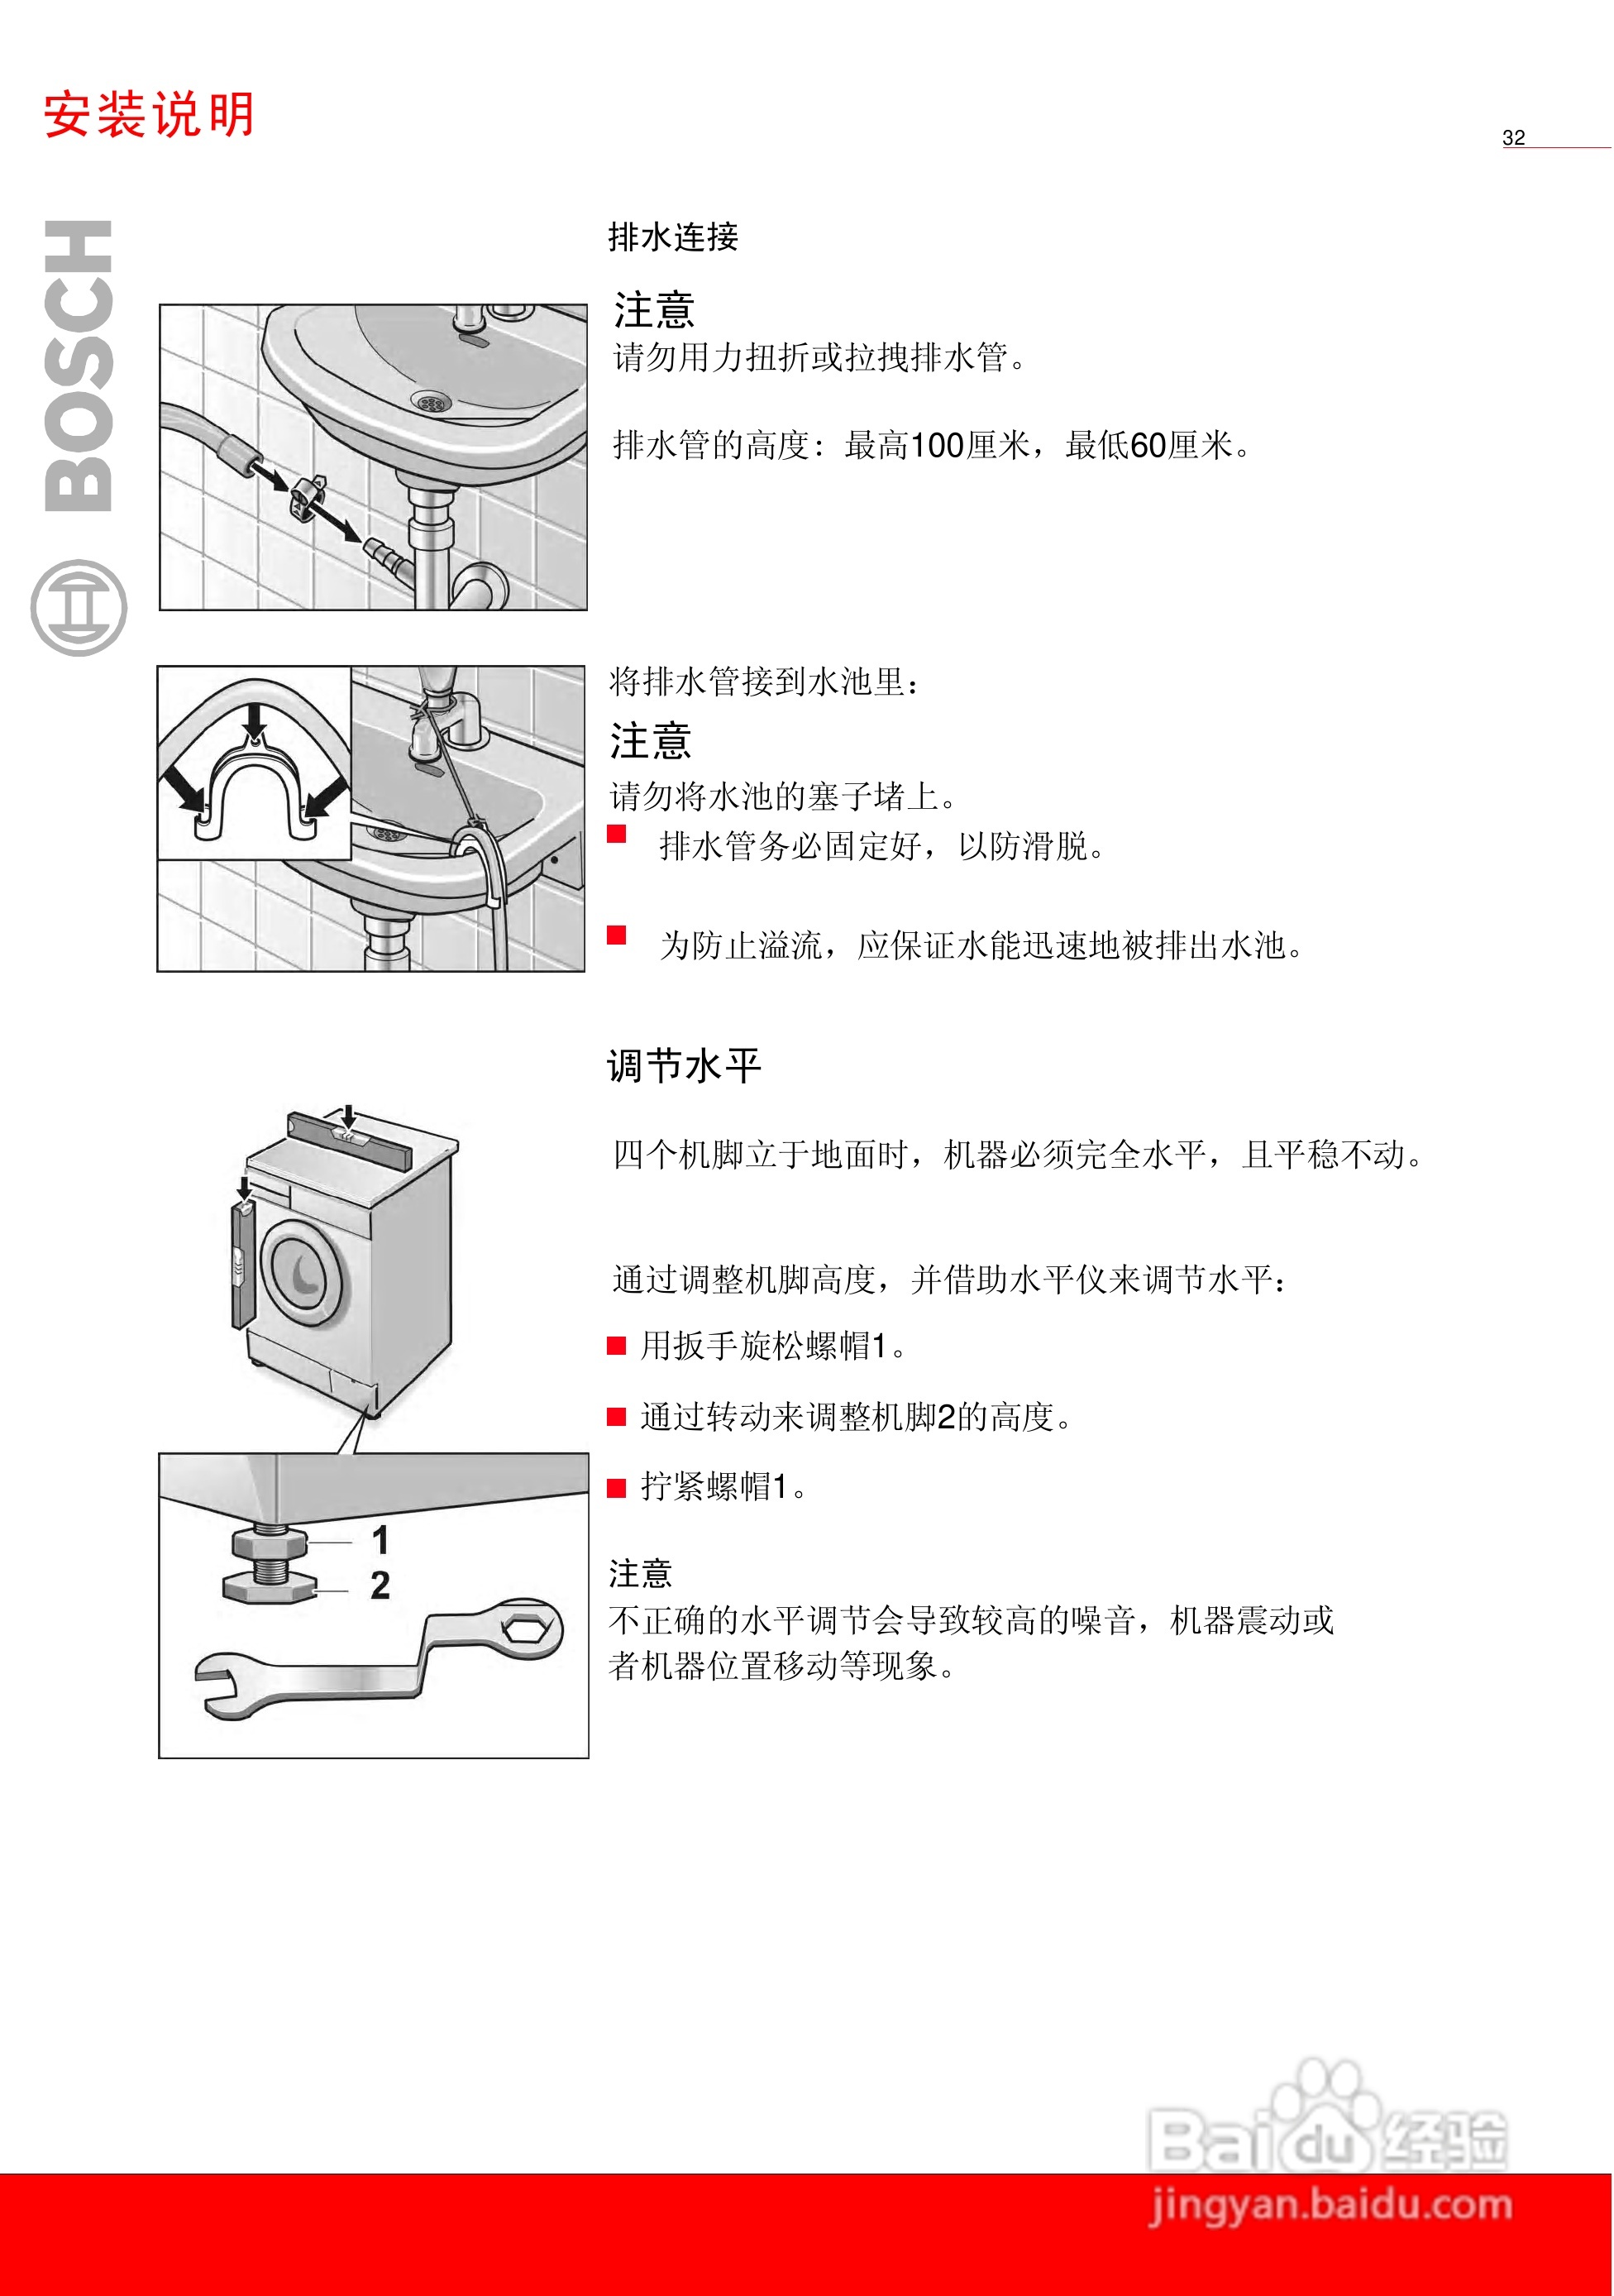 博世wag20268ti全自动滚筒式洗衣机使用及安装说明:[4]